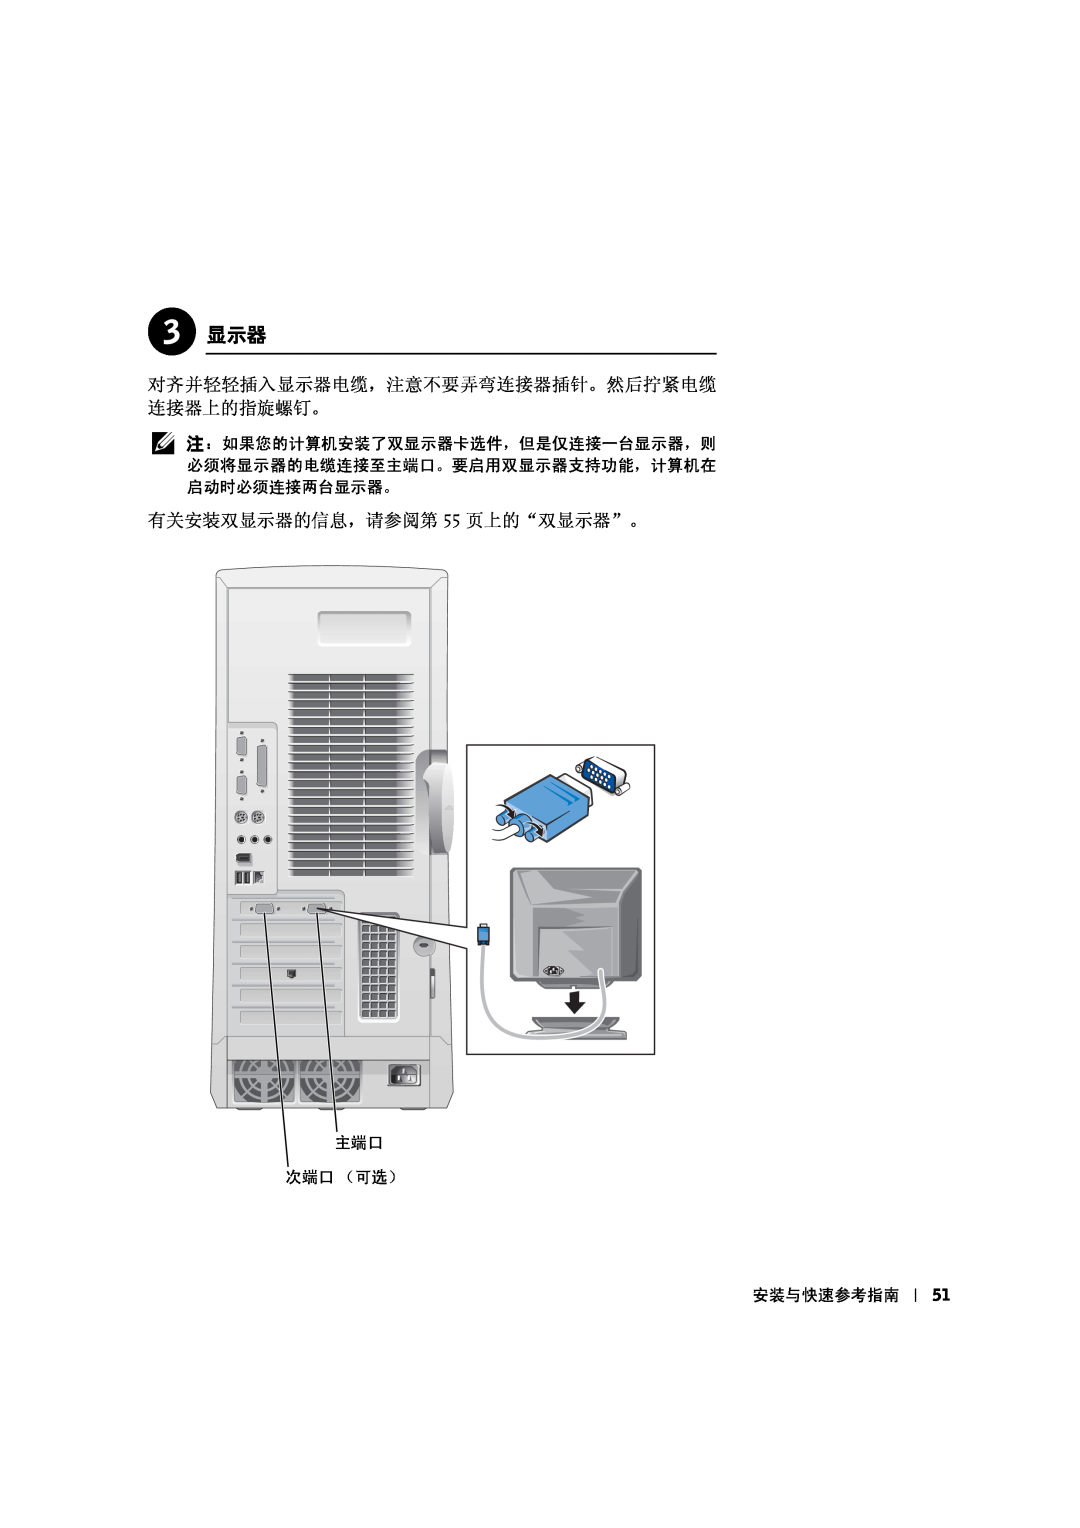 Dell 533CX manual 3 显示器, 对齐并轻轻插入显示器电缆，注意不要弄弯连接器插针。然后拧紧电缆 连接器上的指旋螺钉。, 有关安装双显示器的信息，请参阅第 55 页上的“双显示器”。 